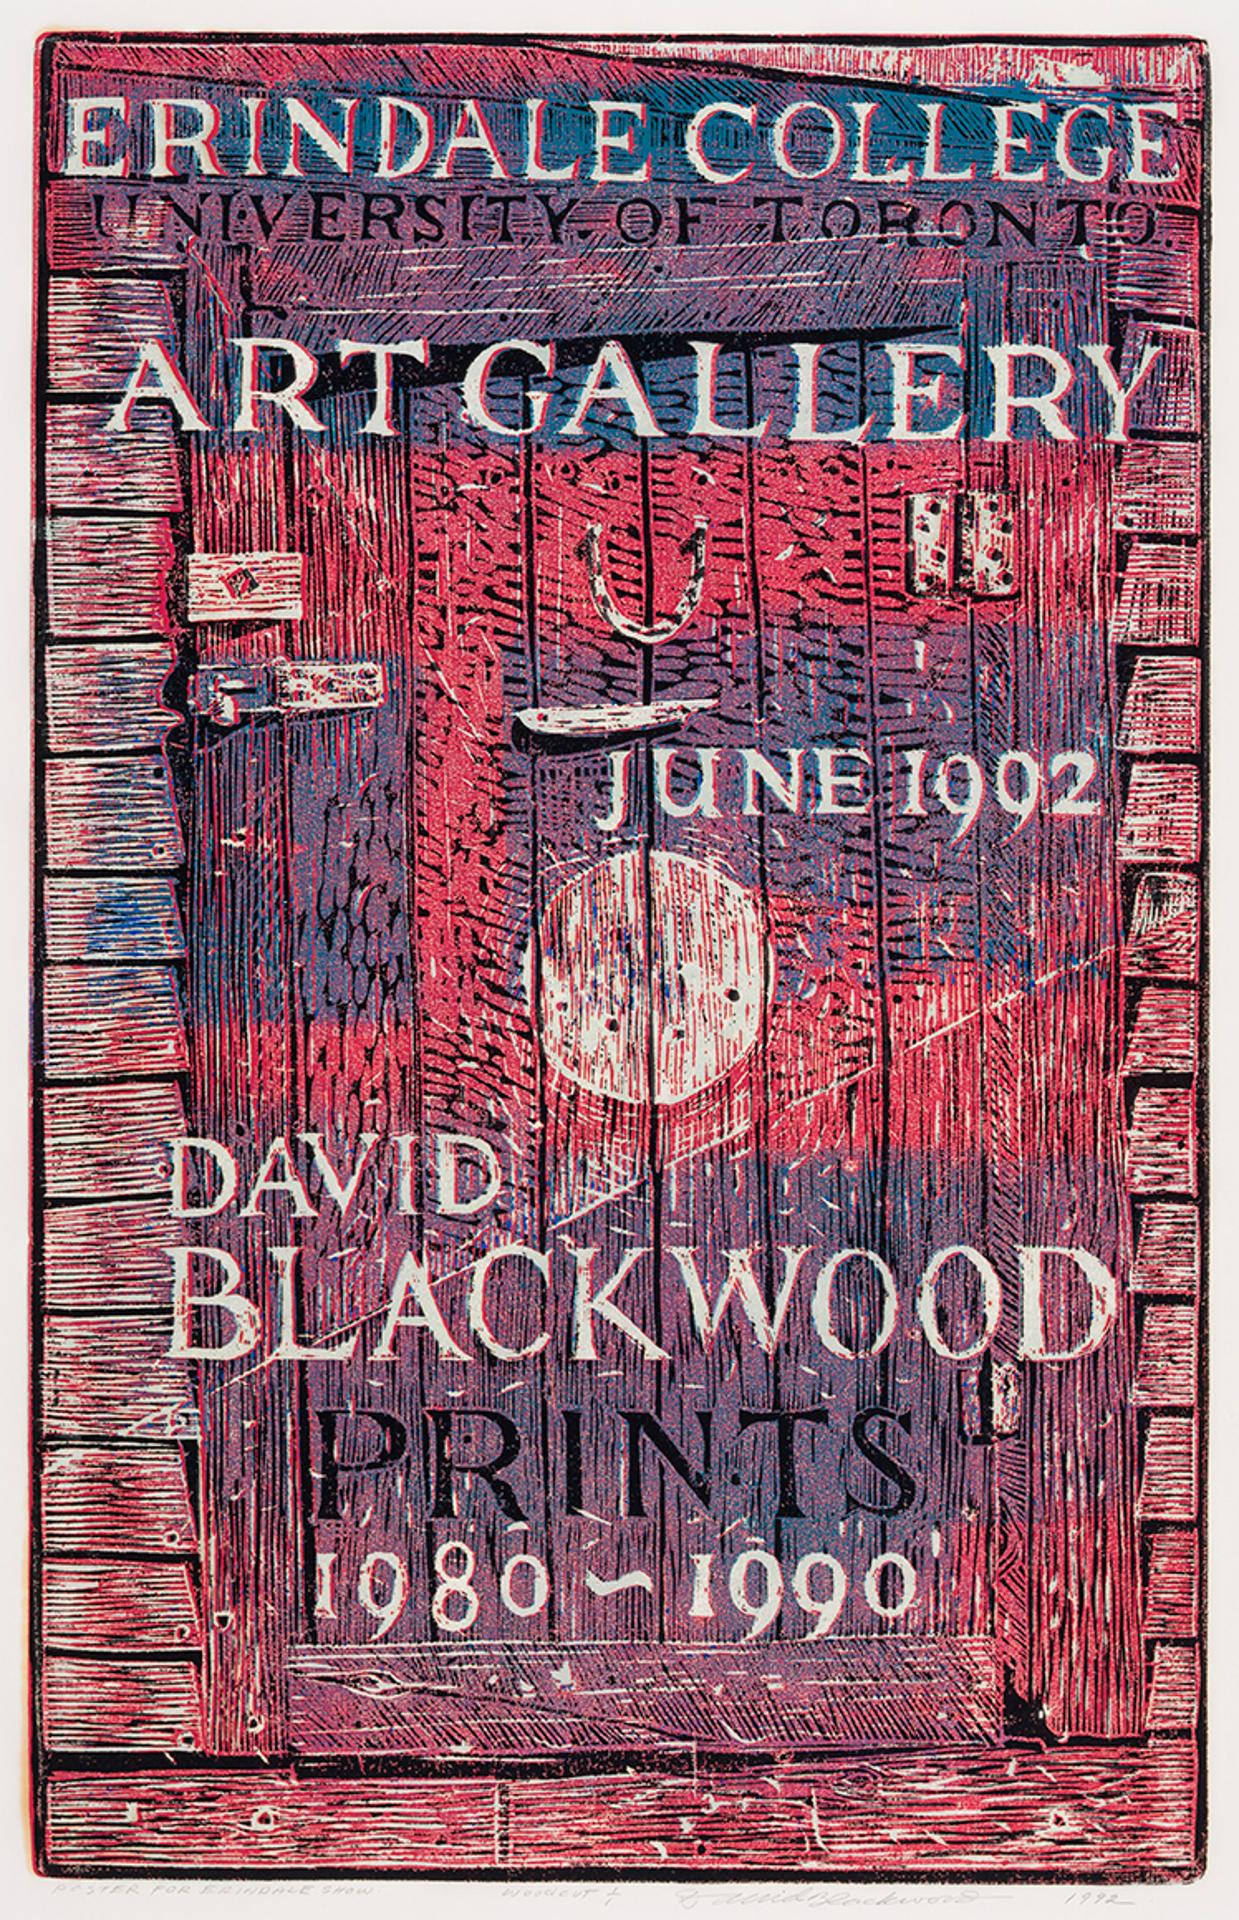 David Lloyd Blackwood (1941-2022) - Poster for Erindale